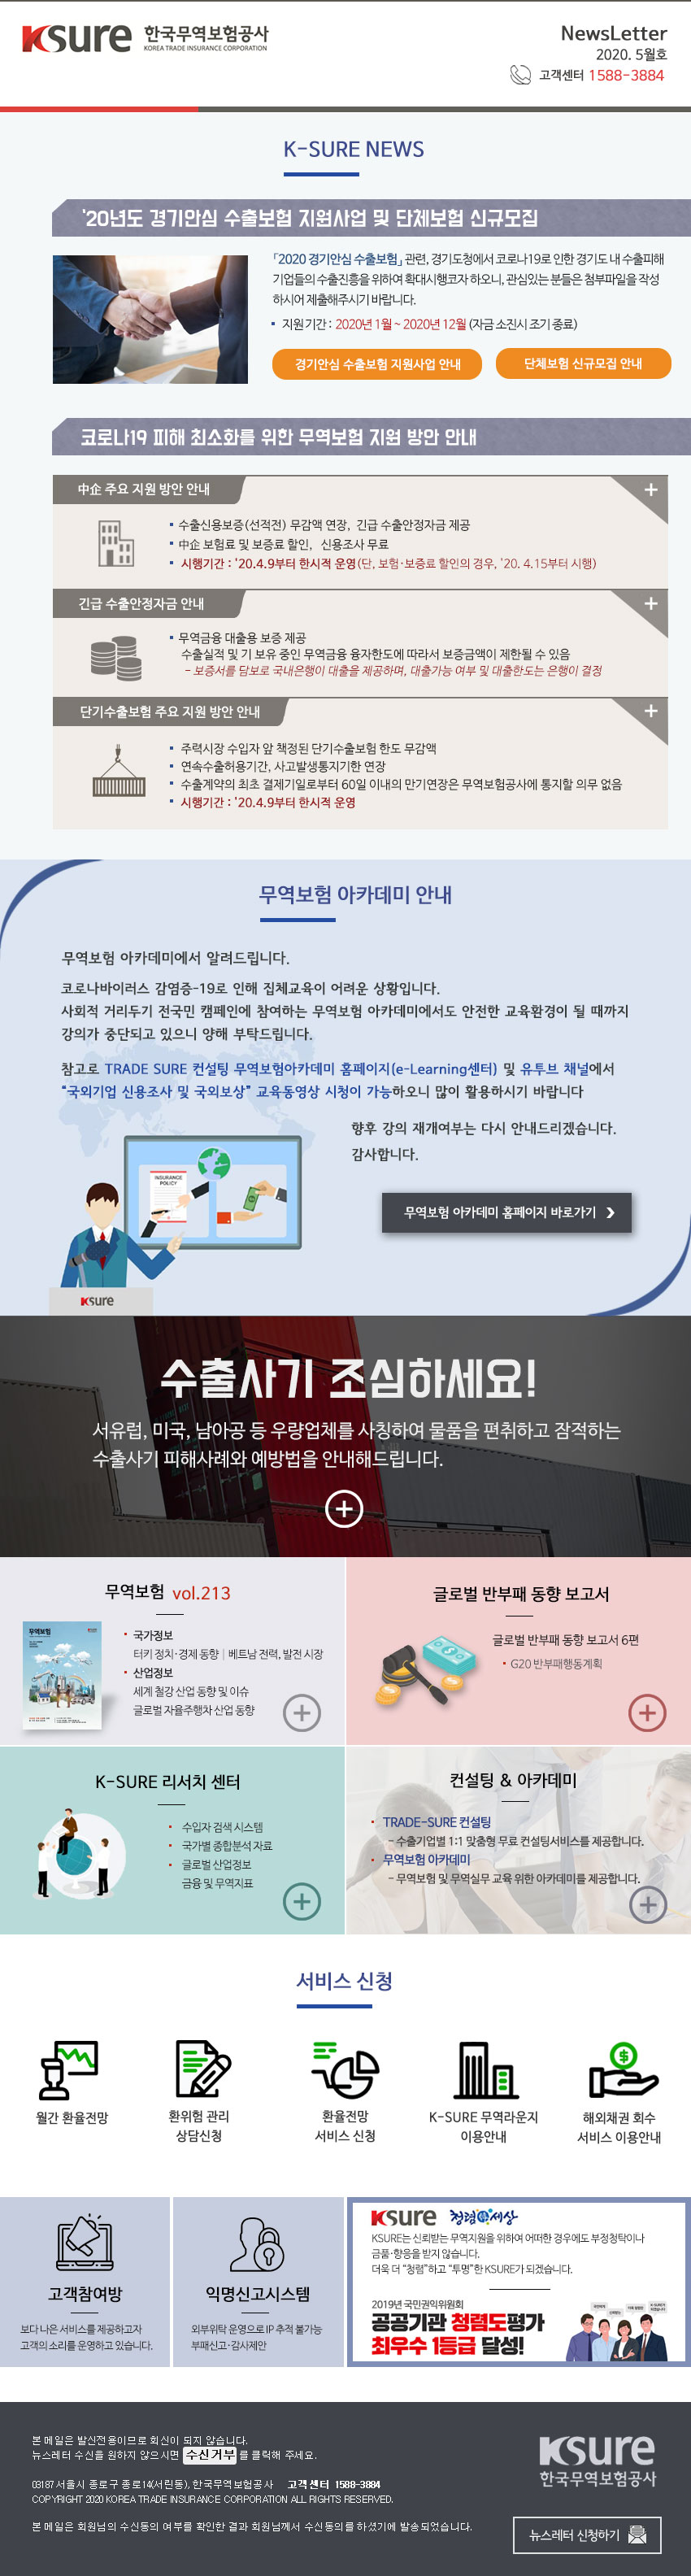 한국무역보험공사에서 보내드리는 2020년 5월 뉴스레터입니다.